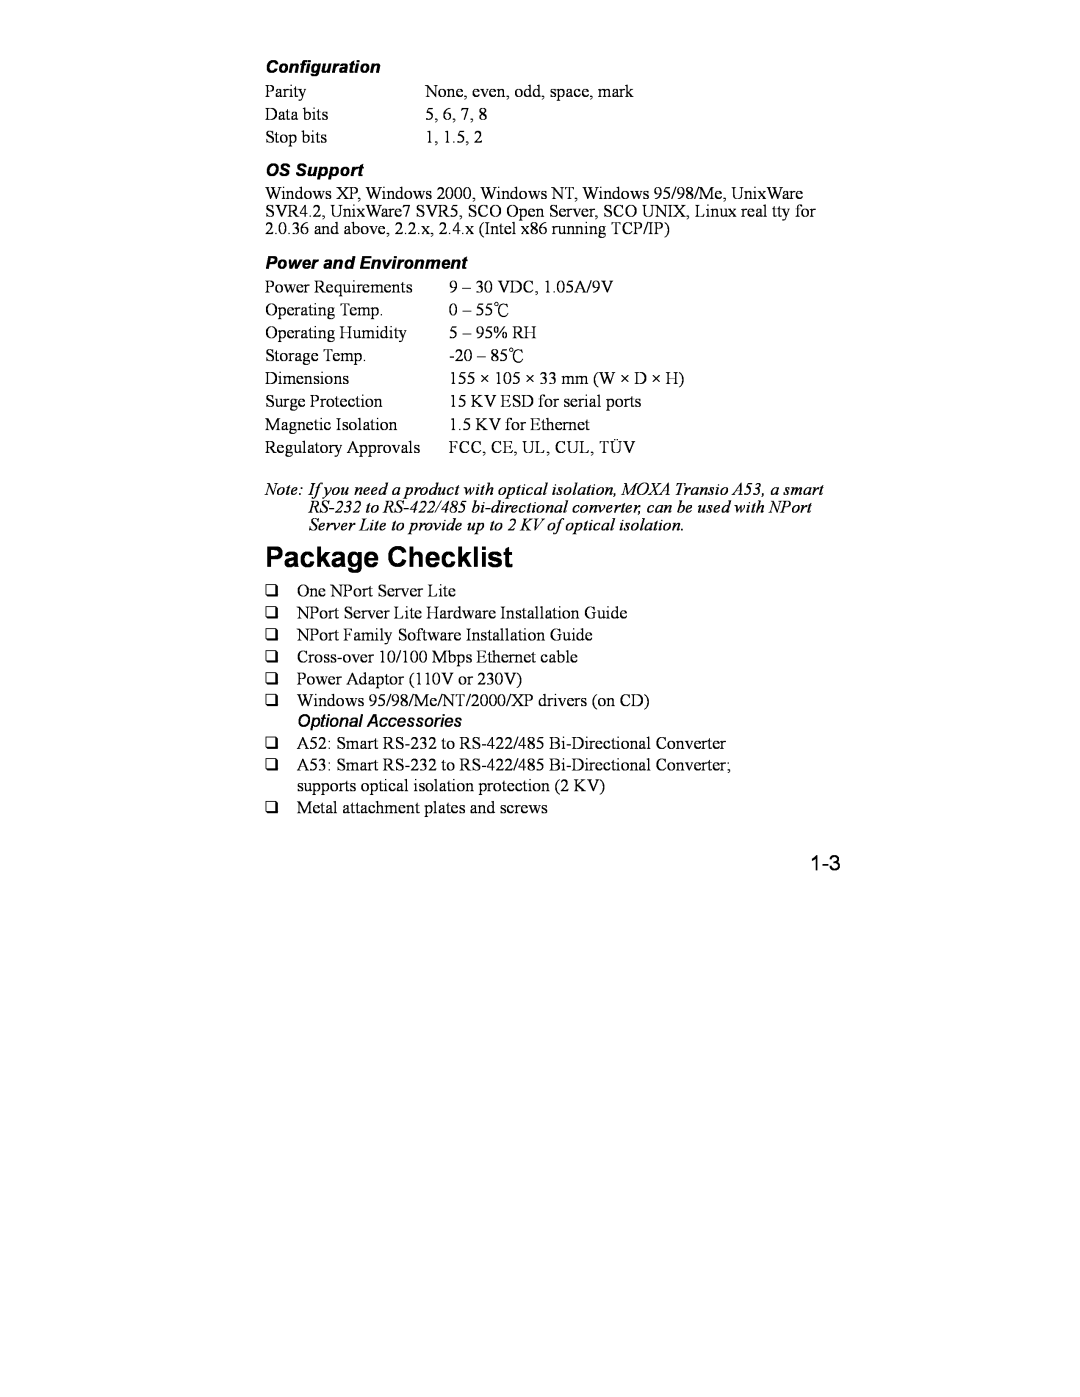 Hamilton Beach DE-301/331, DE-302/304/332/334 manual Package Checklist, Configuration, OS Support, Power and Environment 